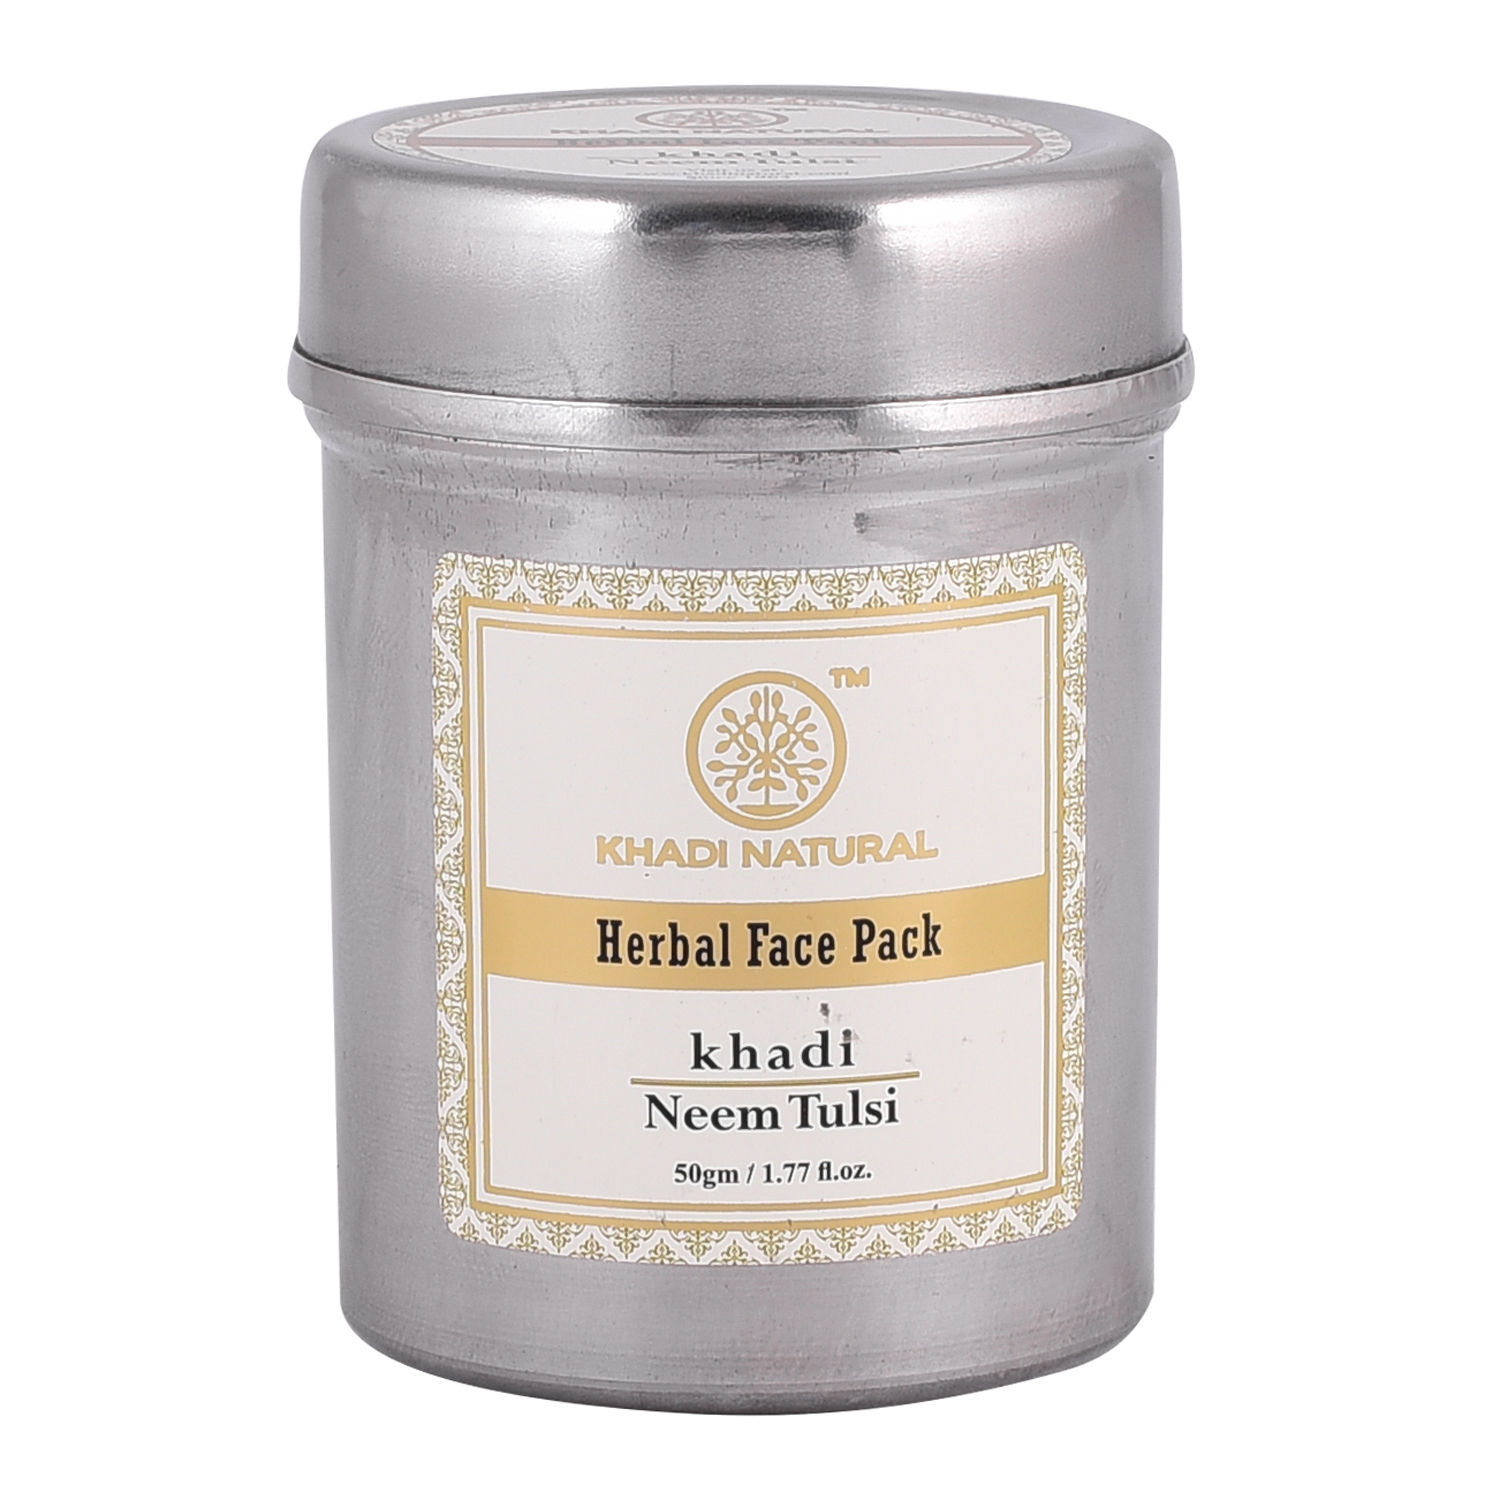 Khadi Natural Neem-Tulsi Herbal Face Pack